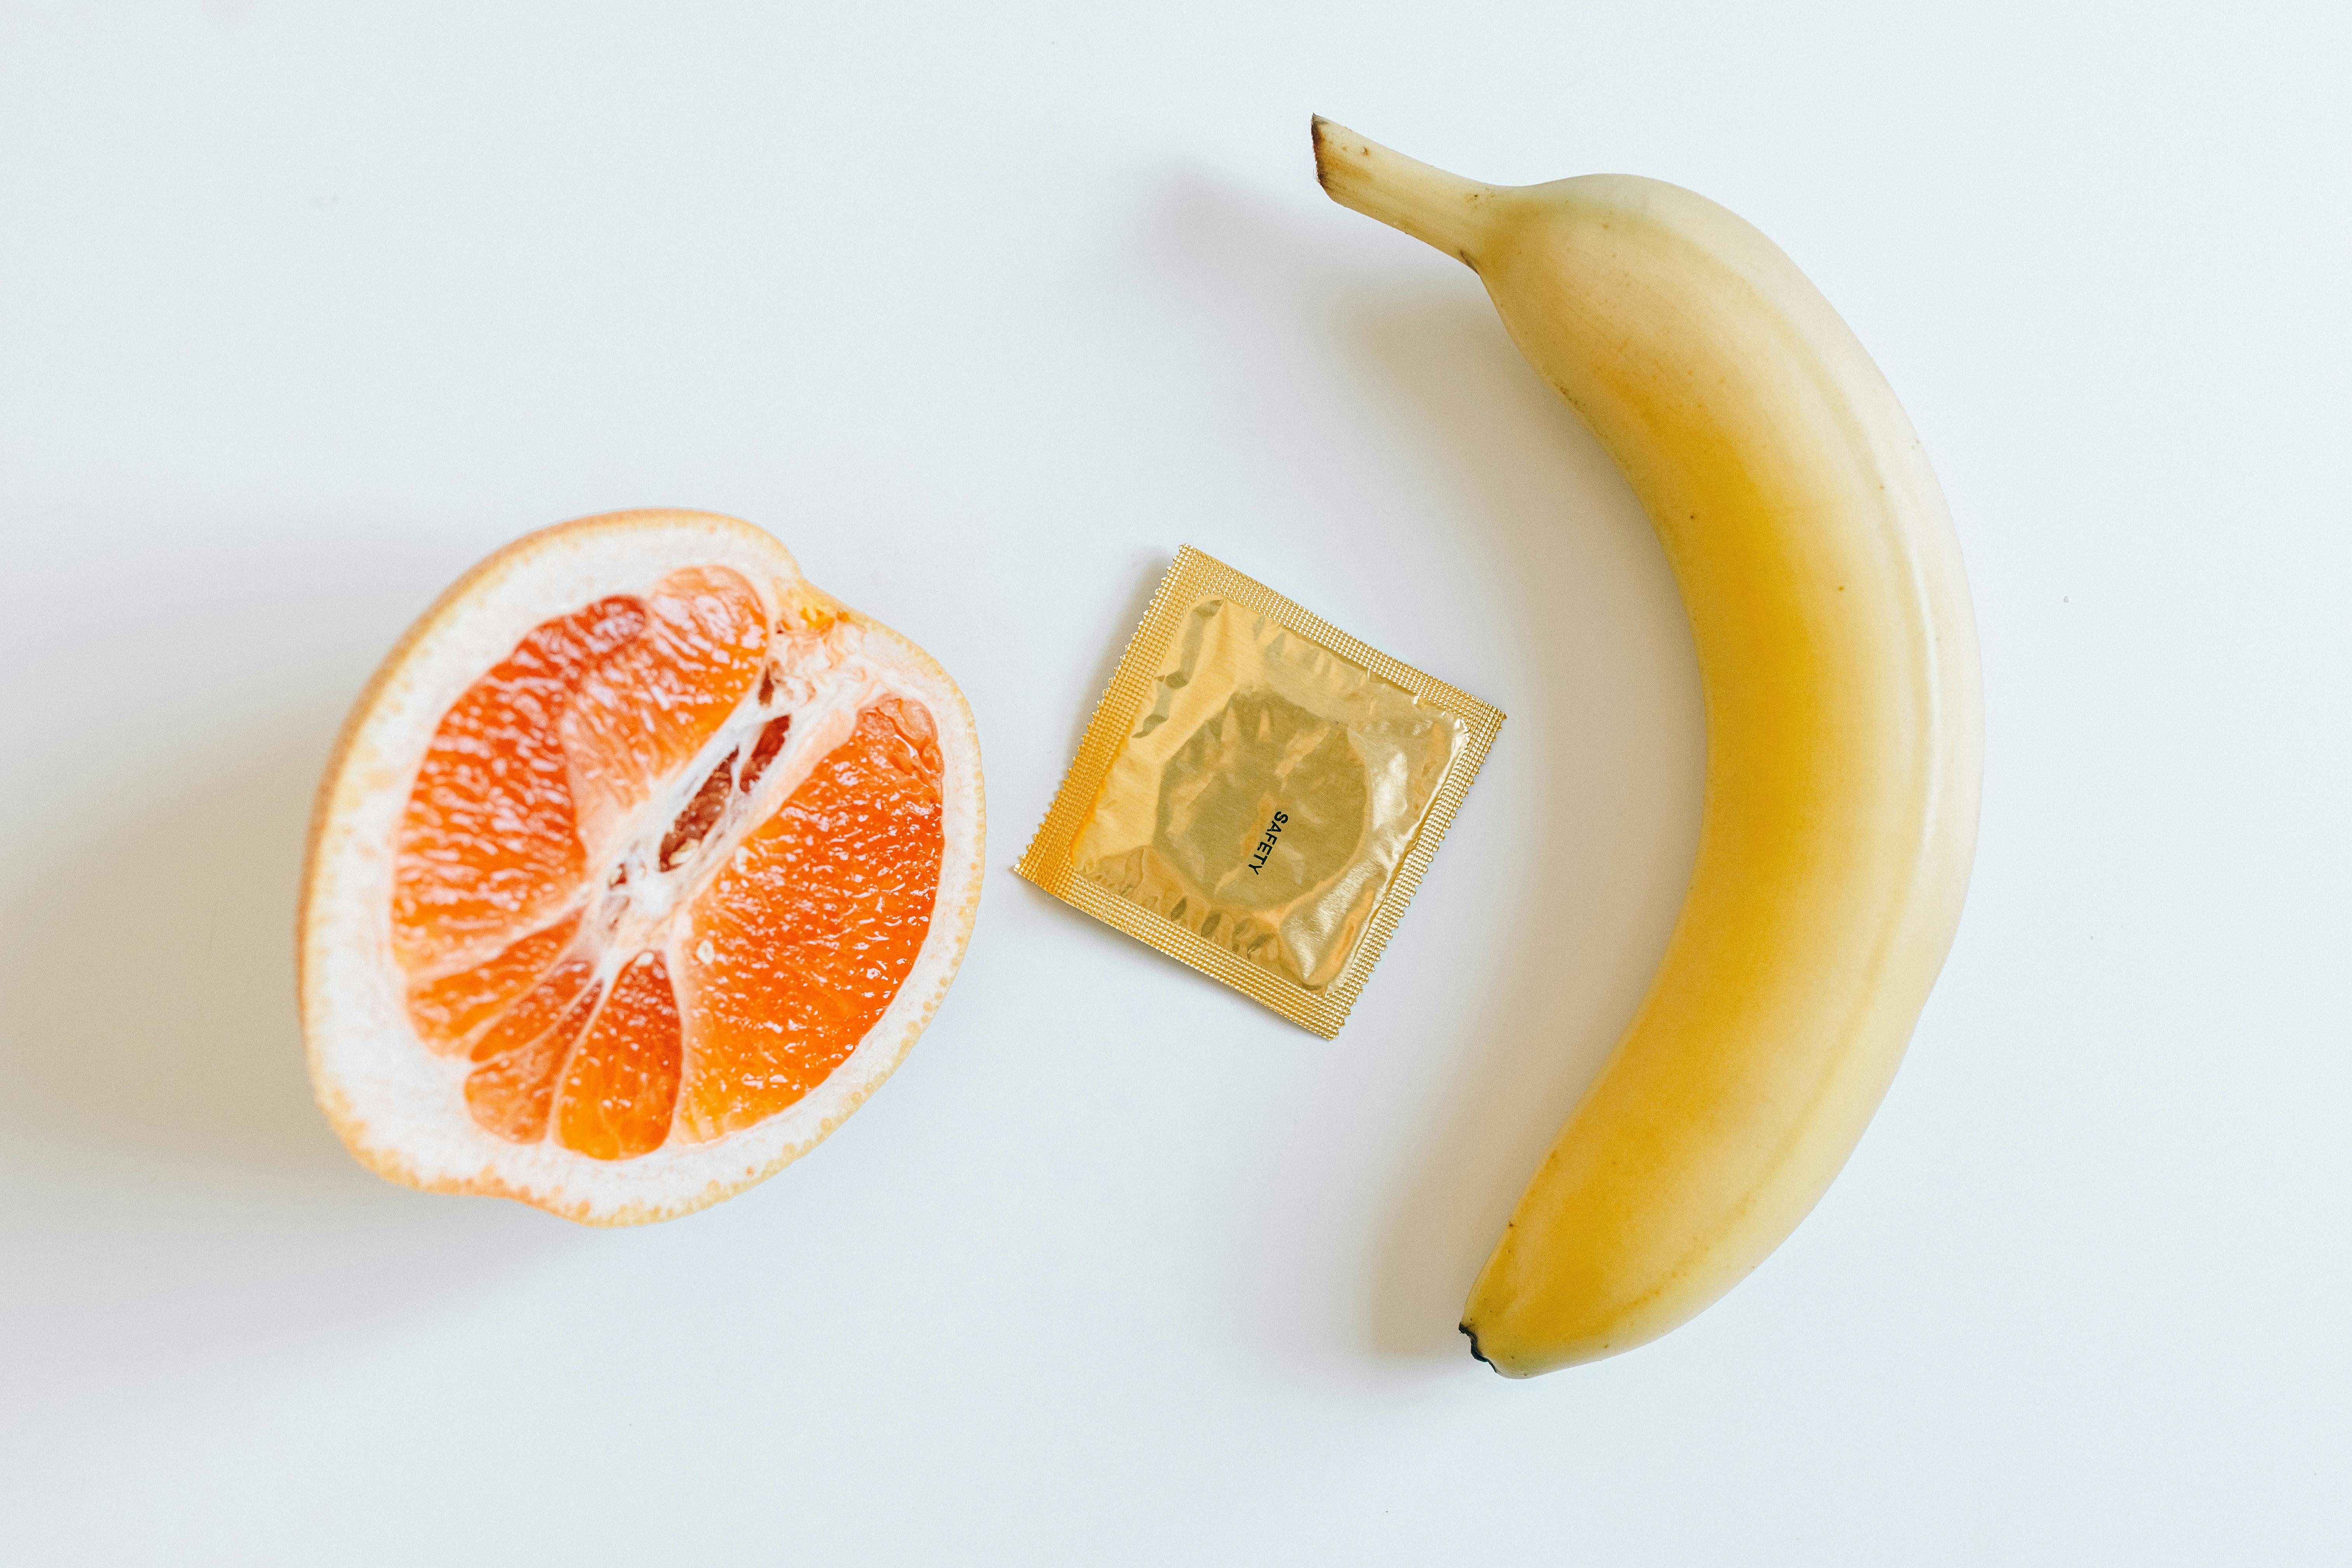 condom between orange and banana